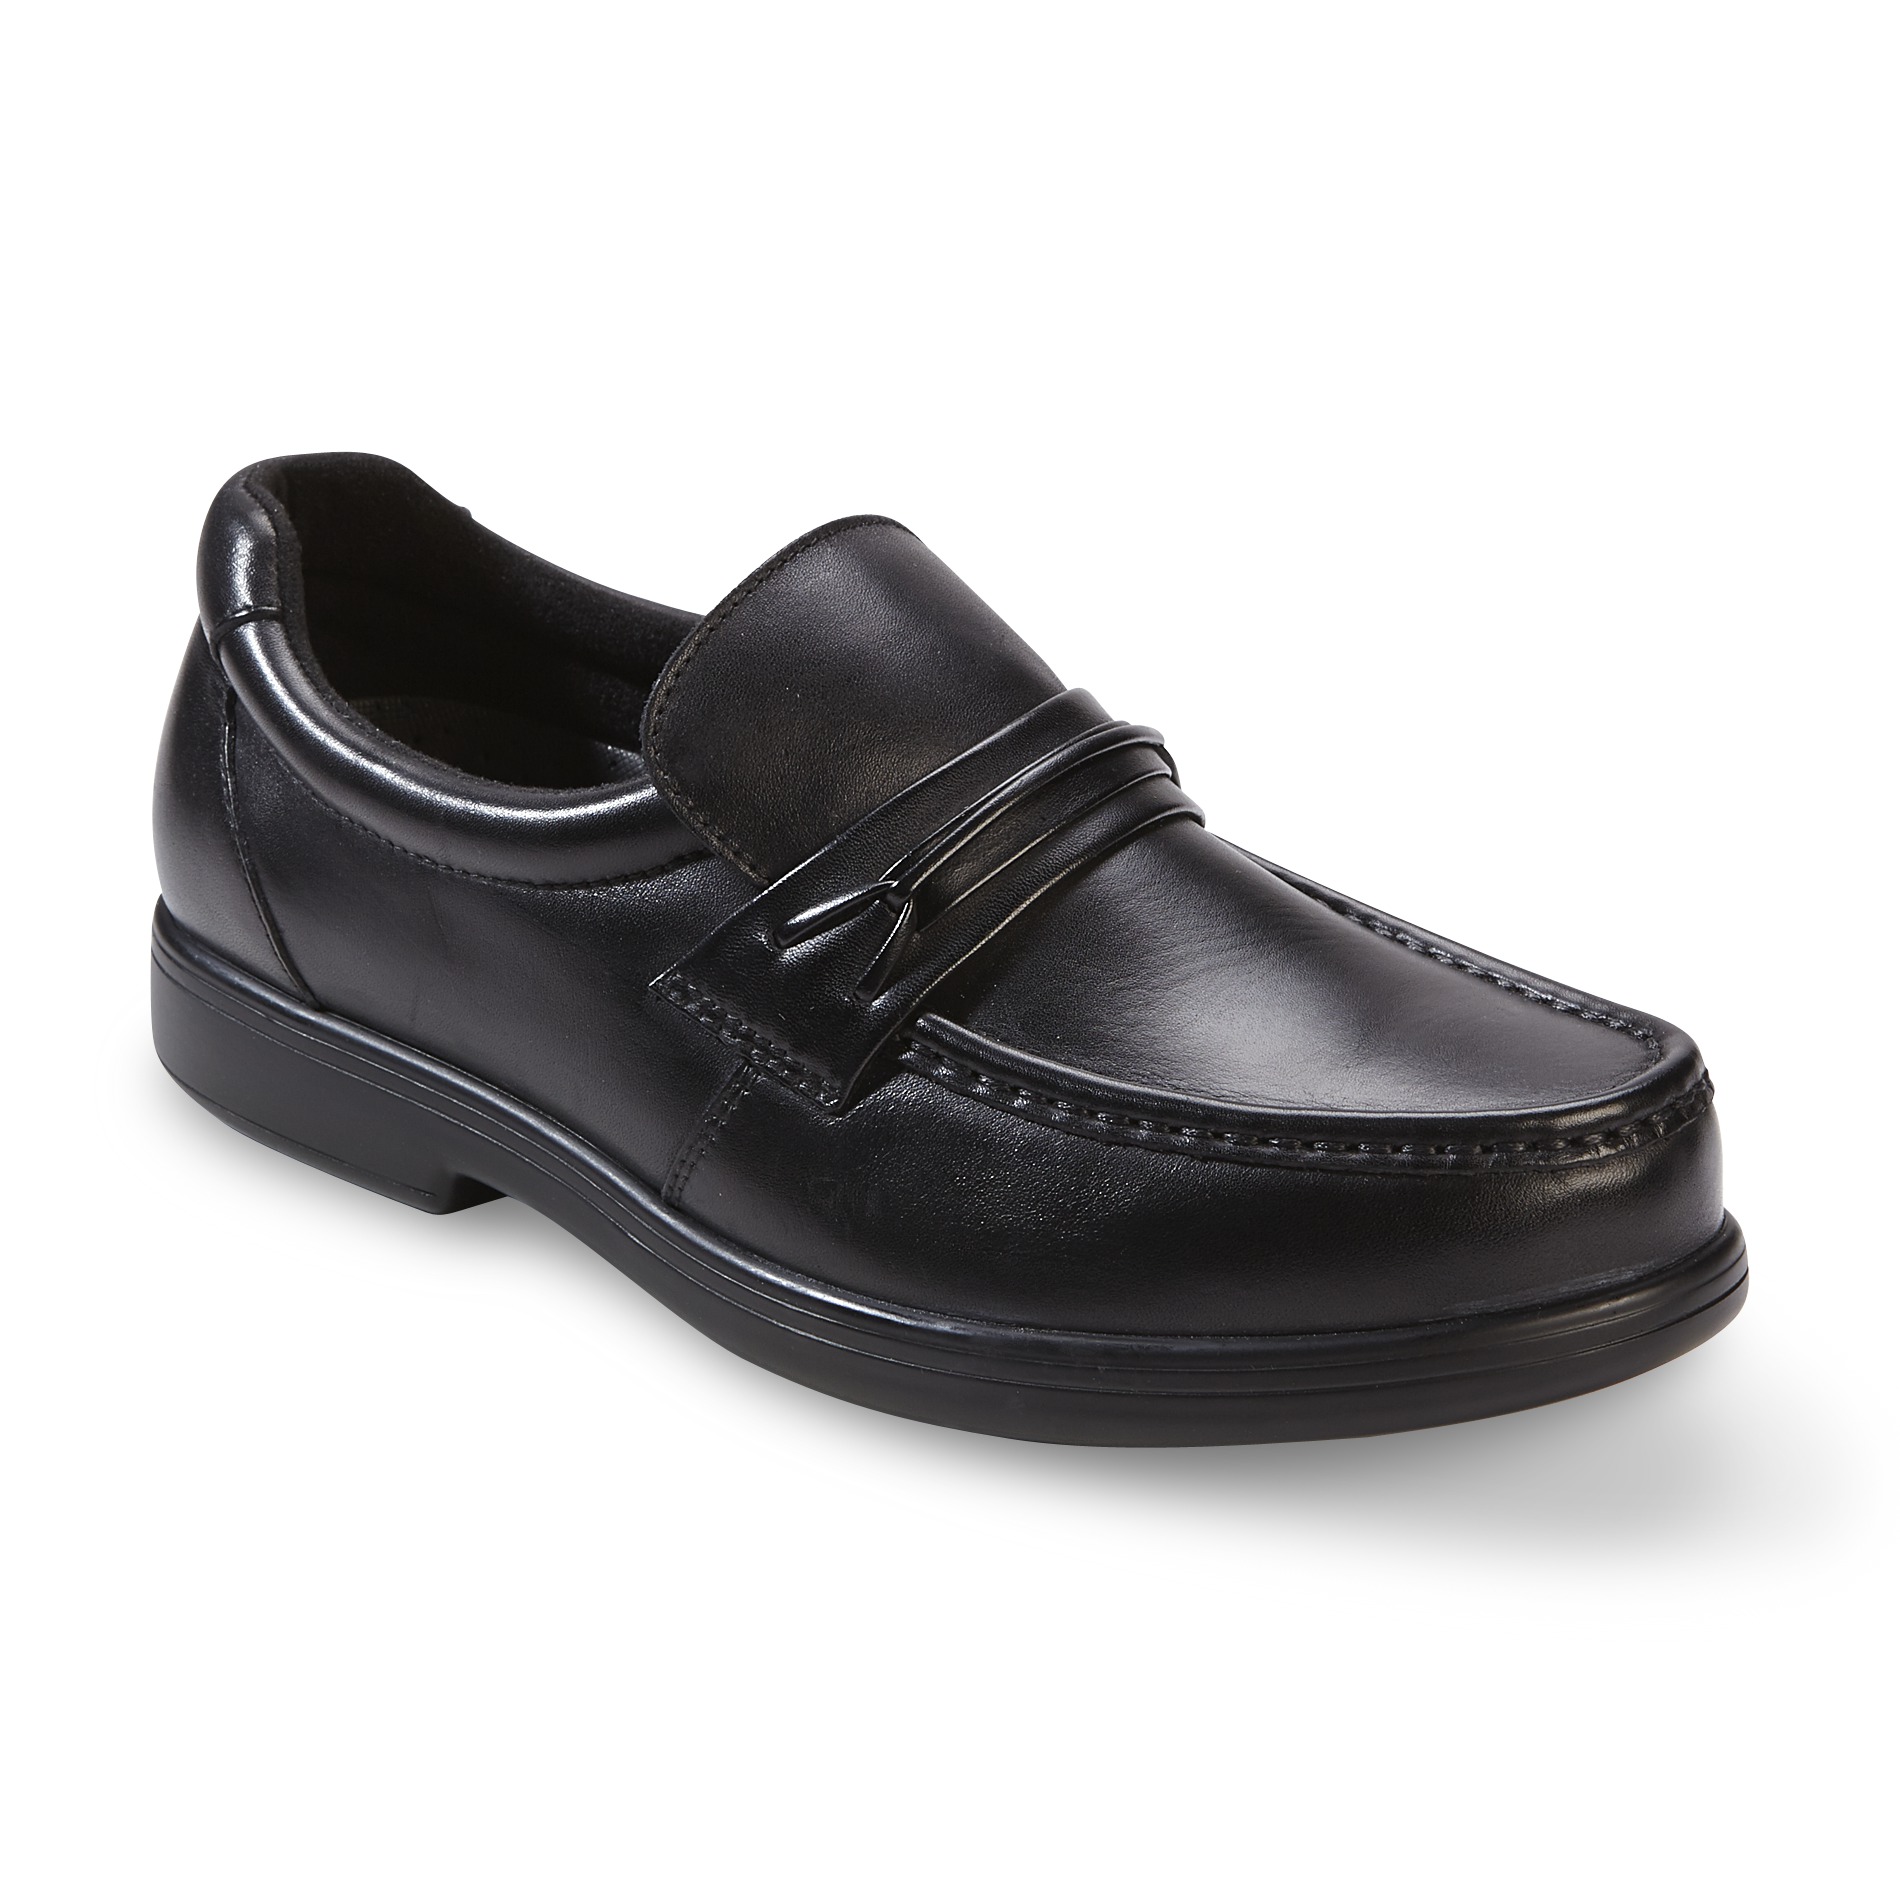 Wonderlite Men's Walter Leather Loafer - Black Wide Width Avail | Shop ...